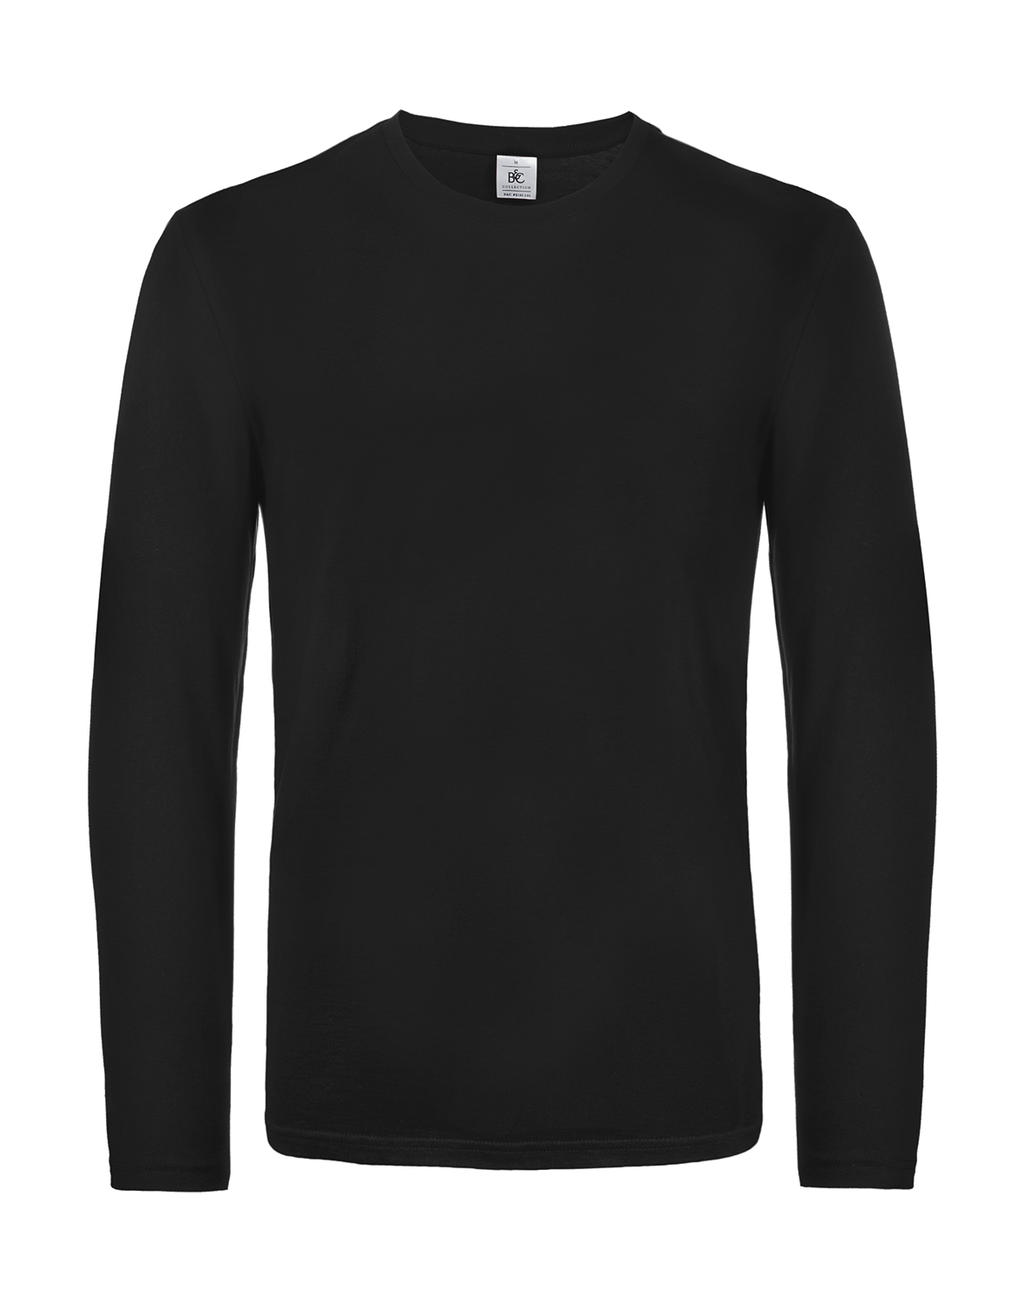 Tričko s dlhými rukávmi #E190 - black